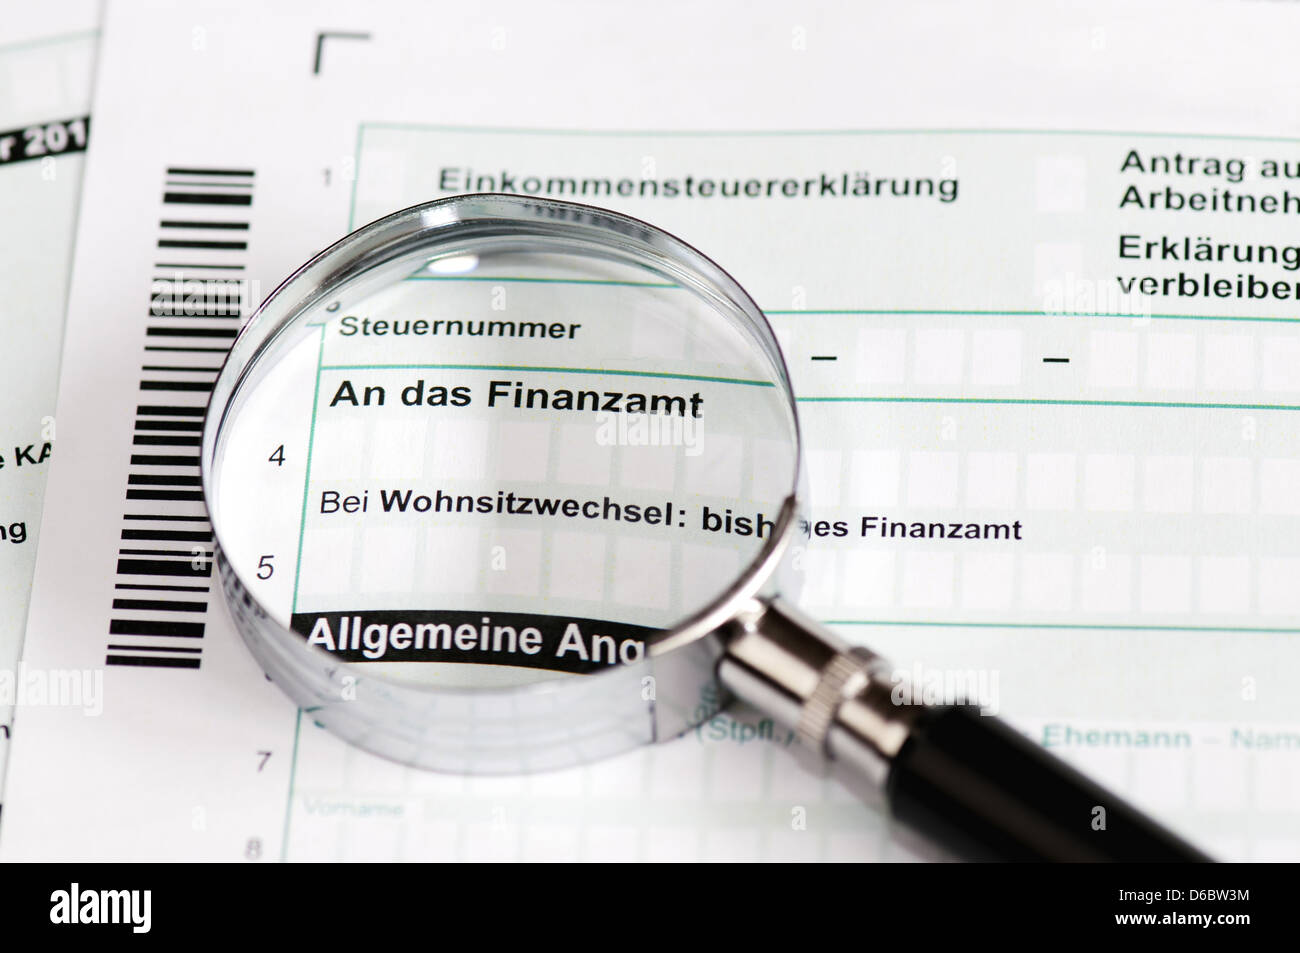 Close up of a german tax form with magnifier - Einkommenssteuererklaerung Stock Photo